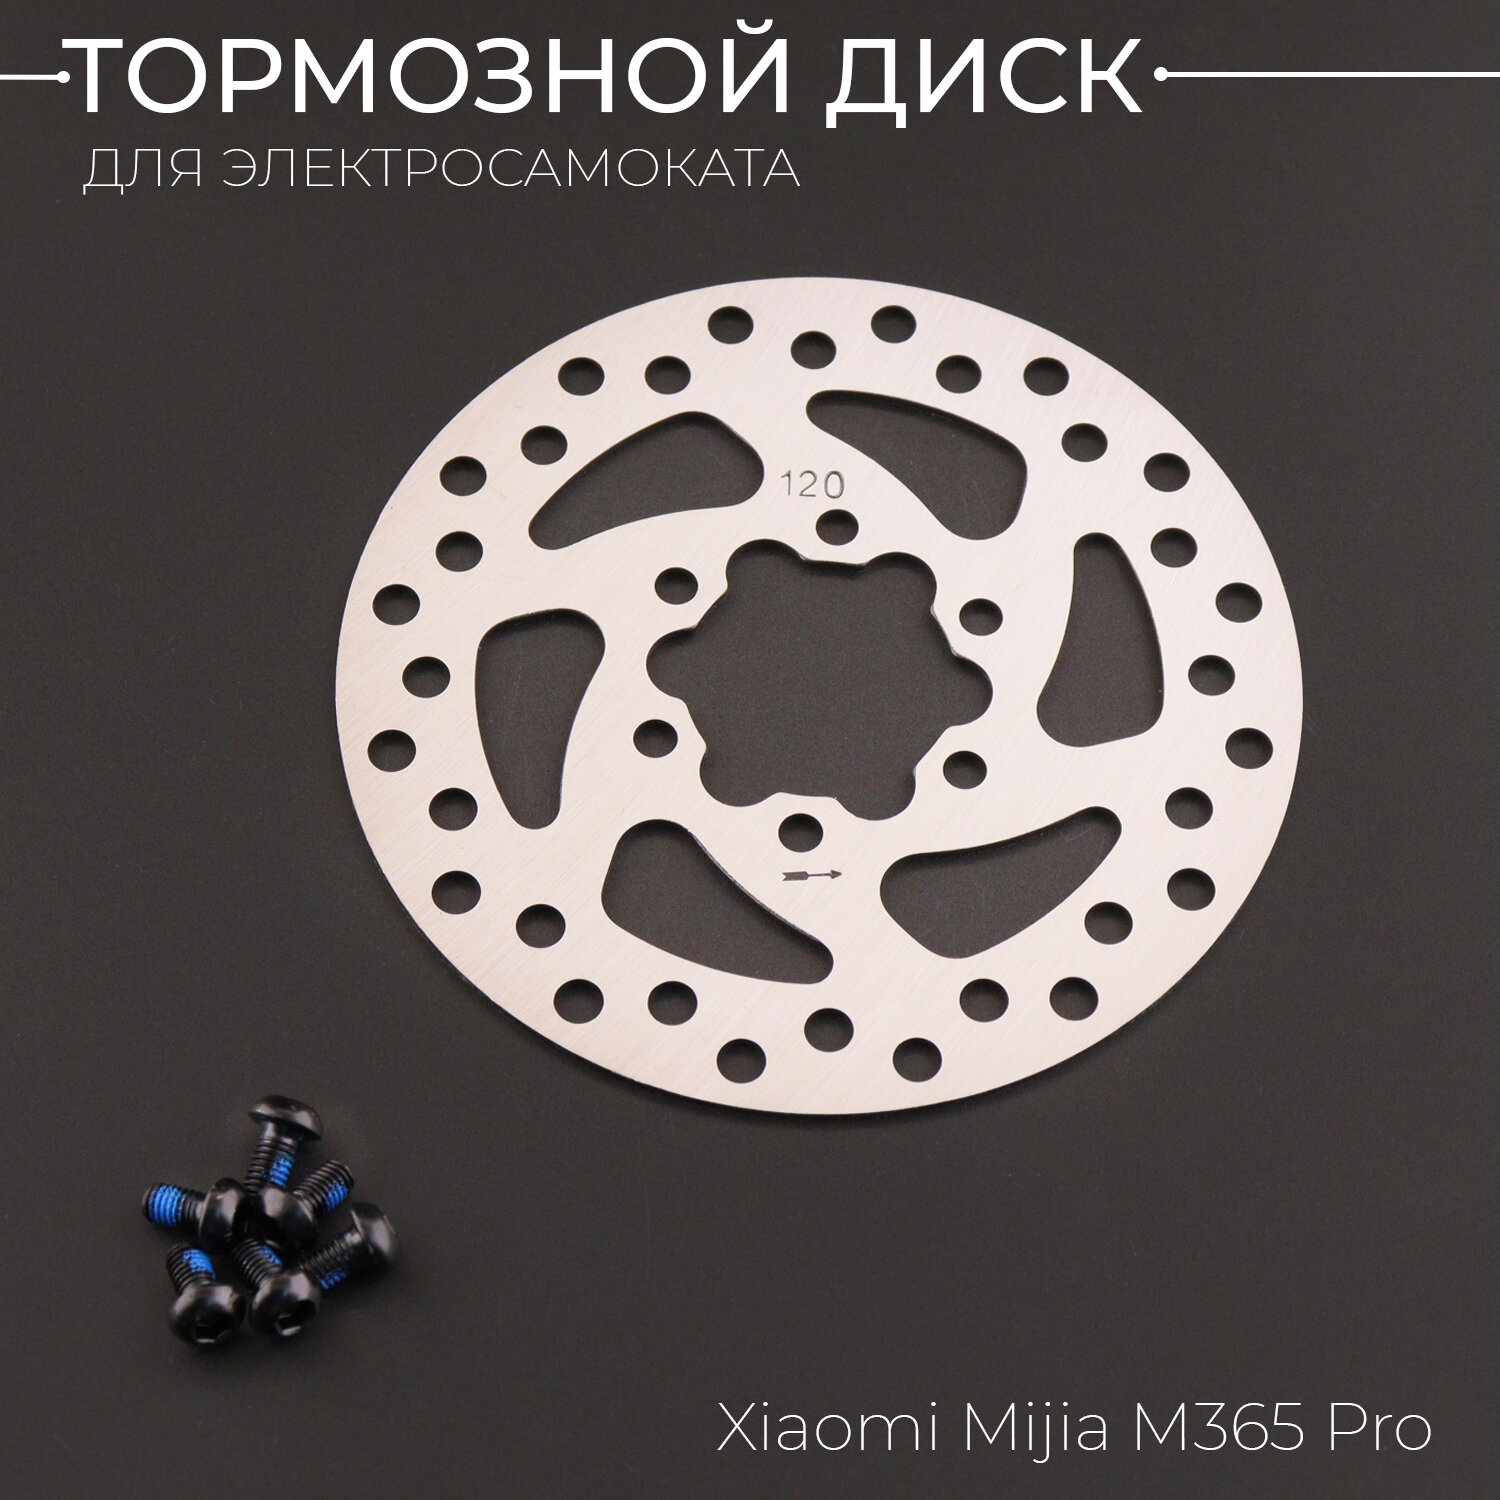 Тормозной диск для электросамоката Xiaomi Mijia M365 Pro (120мм, дв. перфорация)